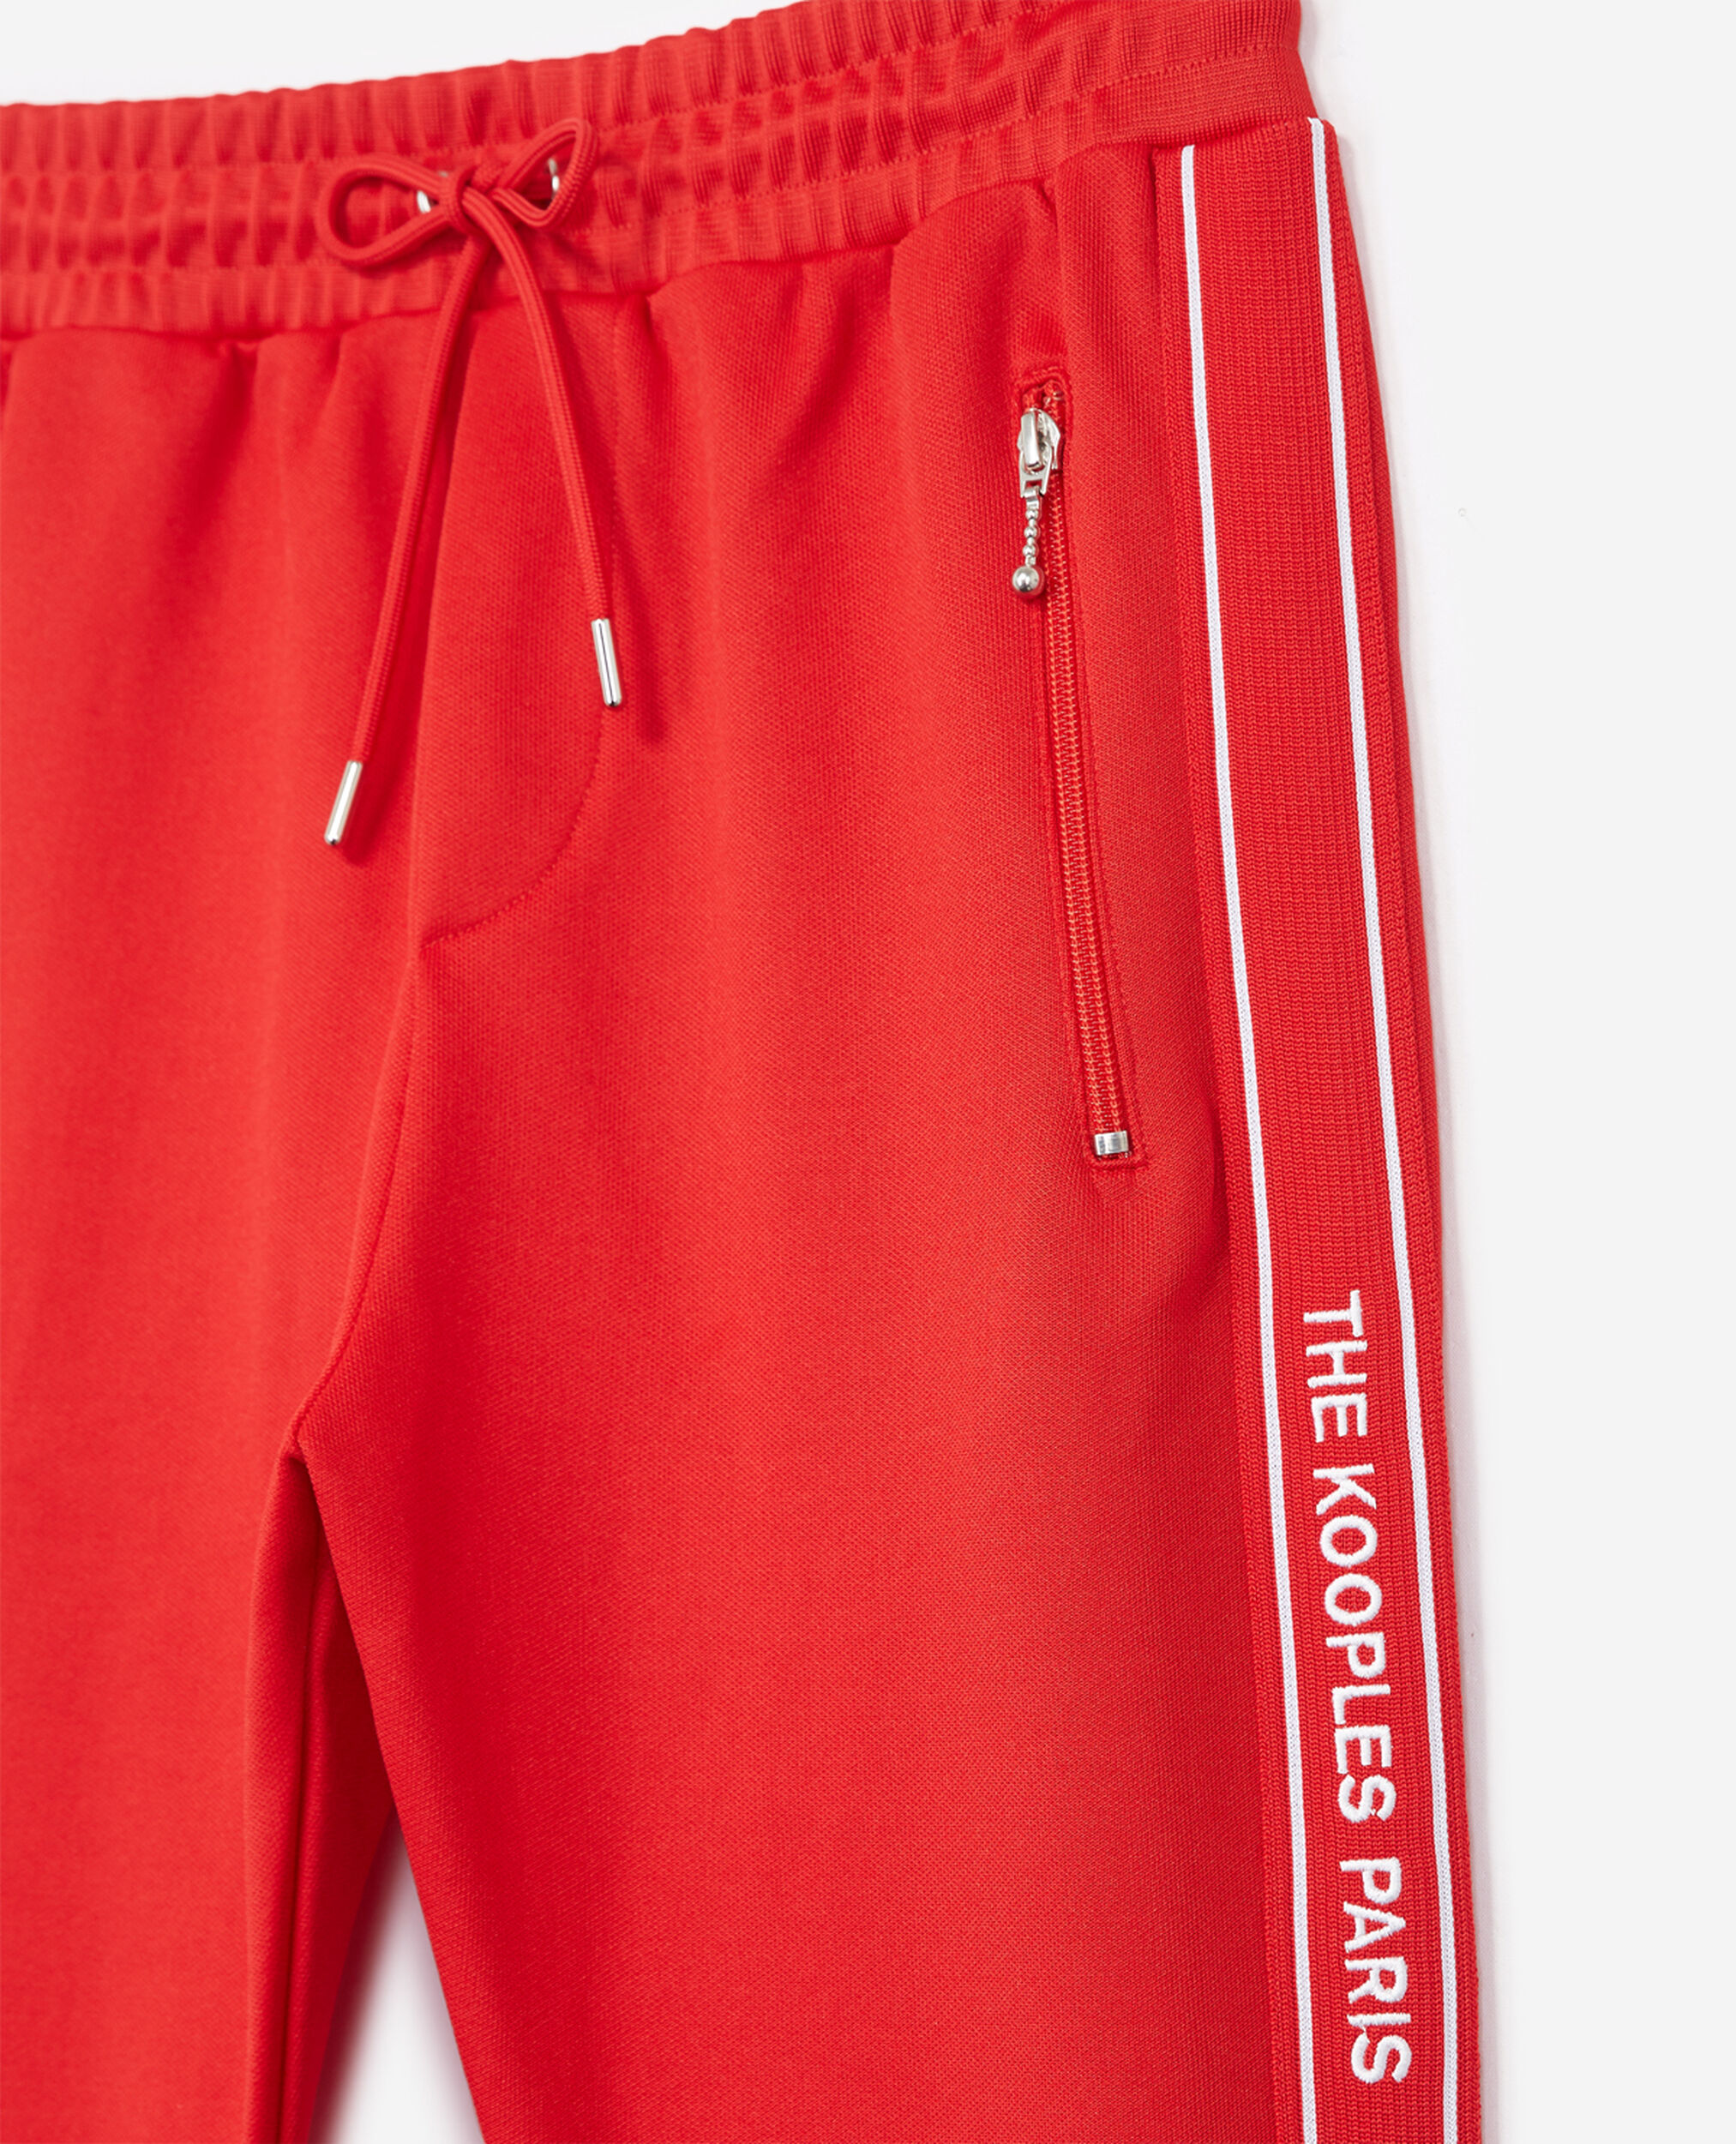 Rote Jogginghose mit The und Logo Reißverschluss | Kooples Streifen, Skinny-Fit-Passform, rotem